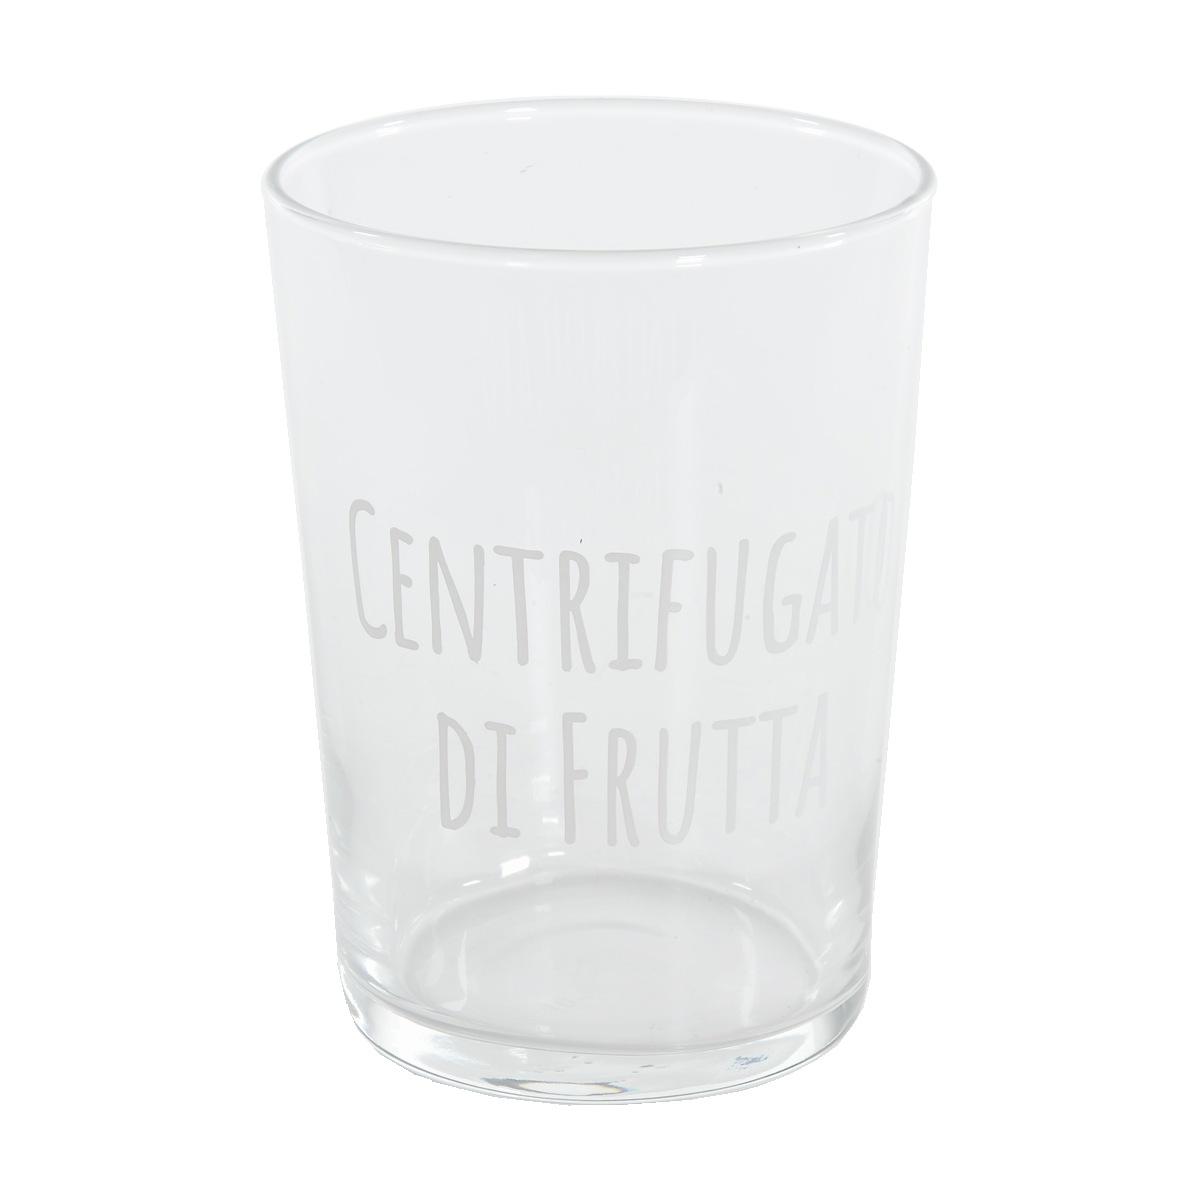 Bicchiere Vetro Centrifugato di Frutta Simple Day ml.500